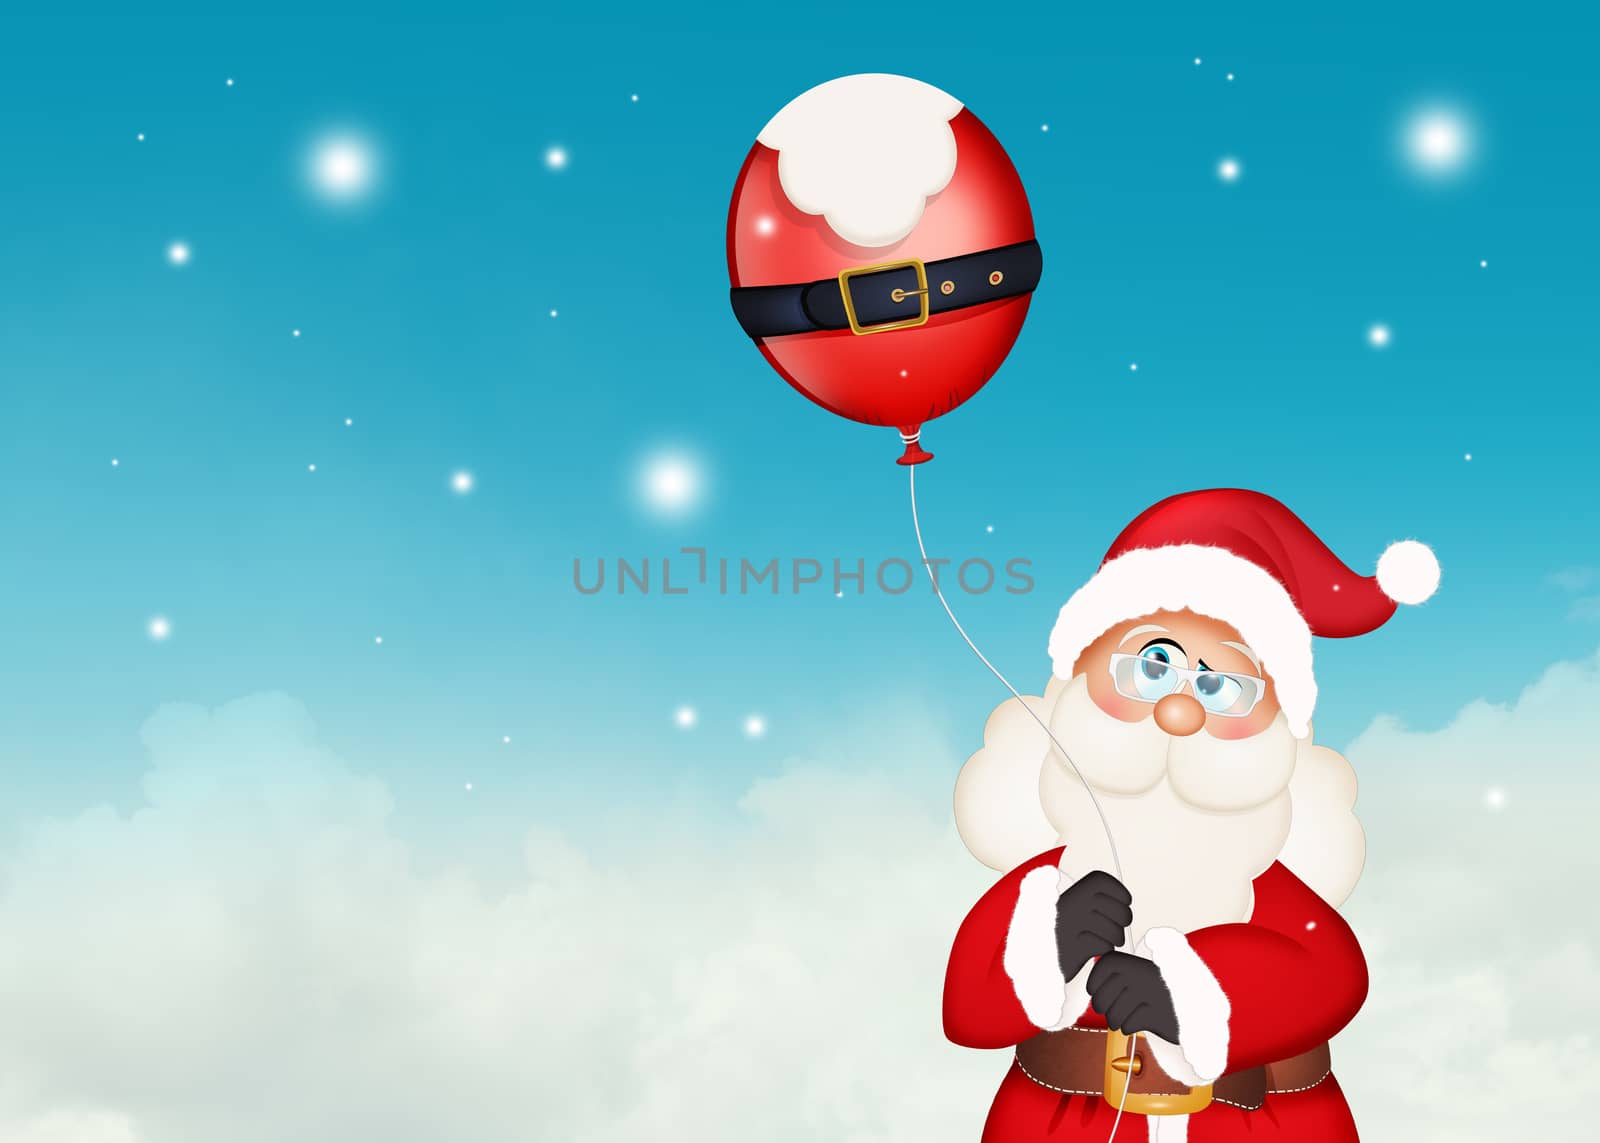 Santa Claus with balloons by adrenalina